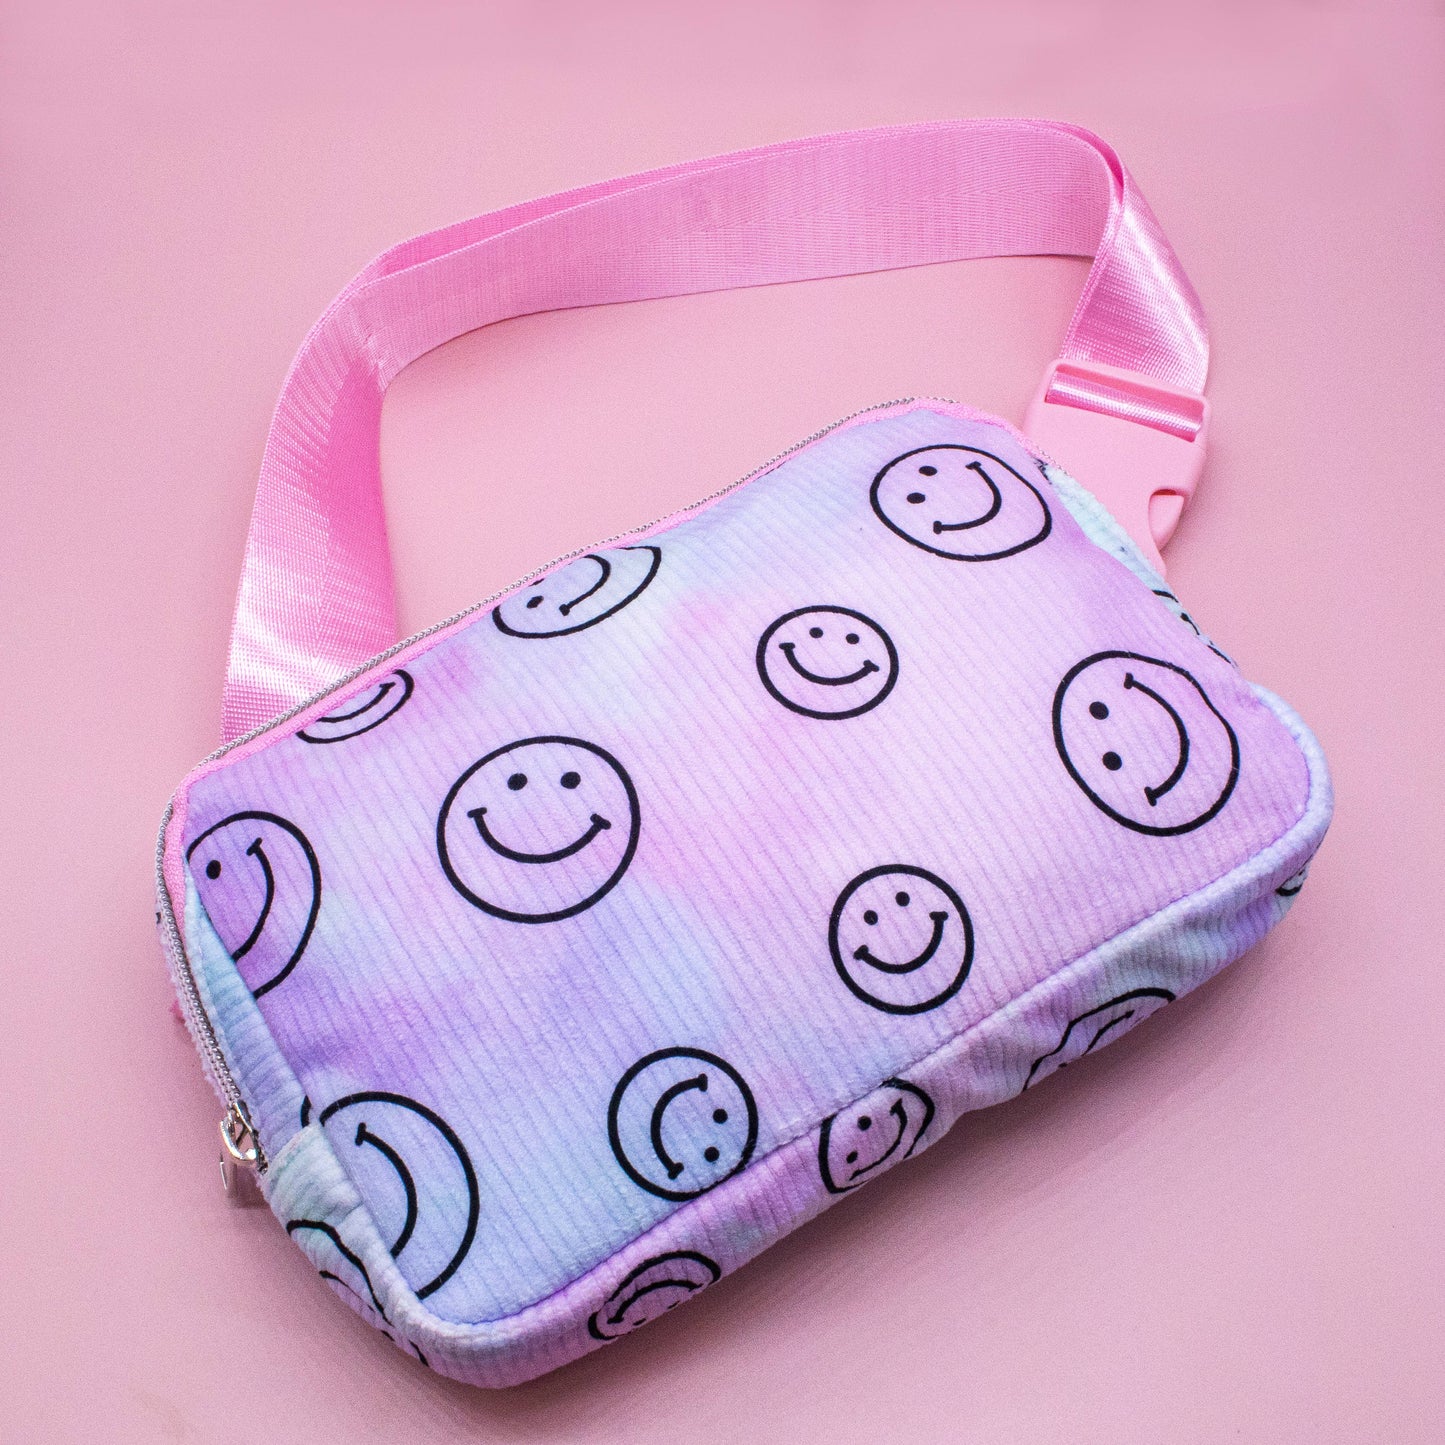 Kids Belt Bag - Tie Dye Smiley Face Crossbody Fanny Pack